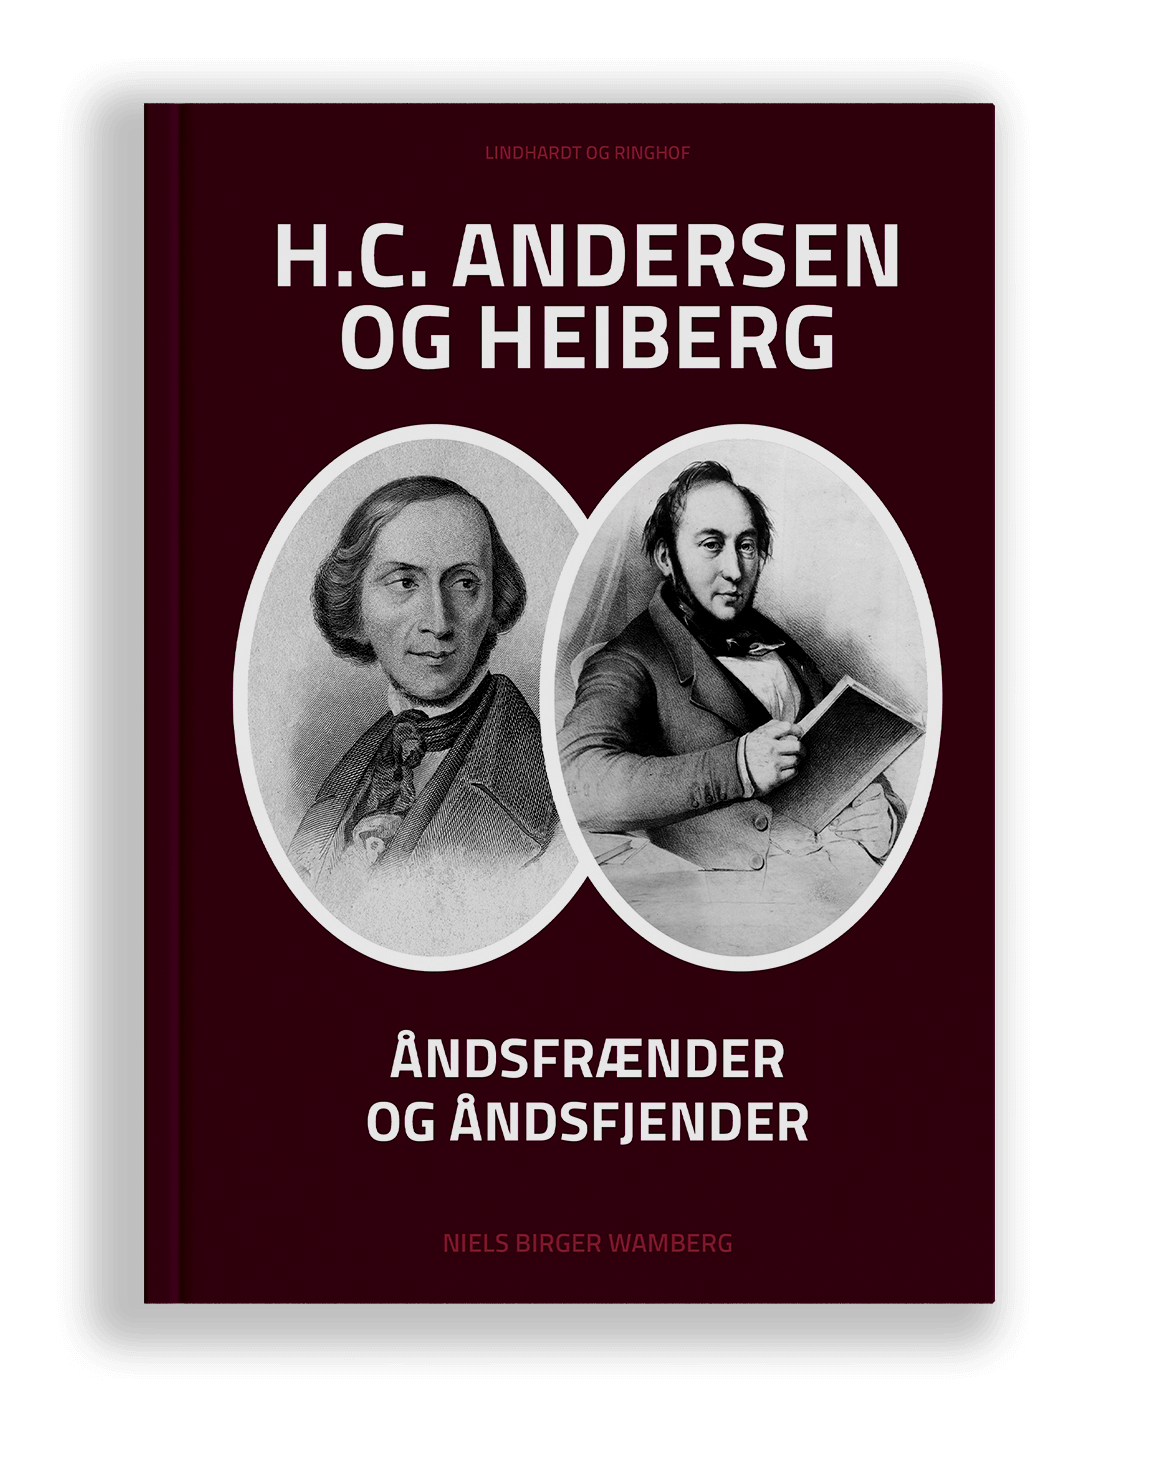 hcandersen-og-heiberg-book-cover